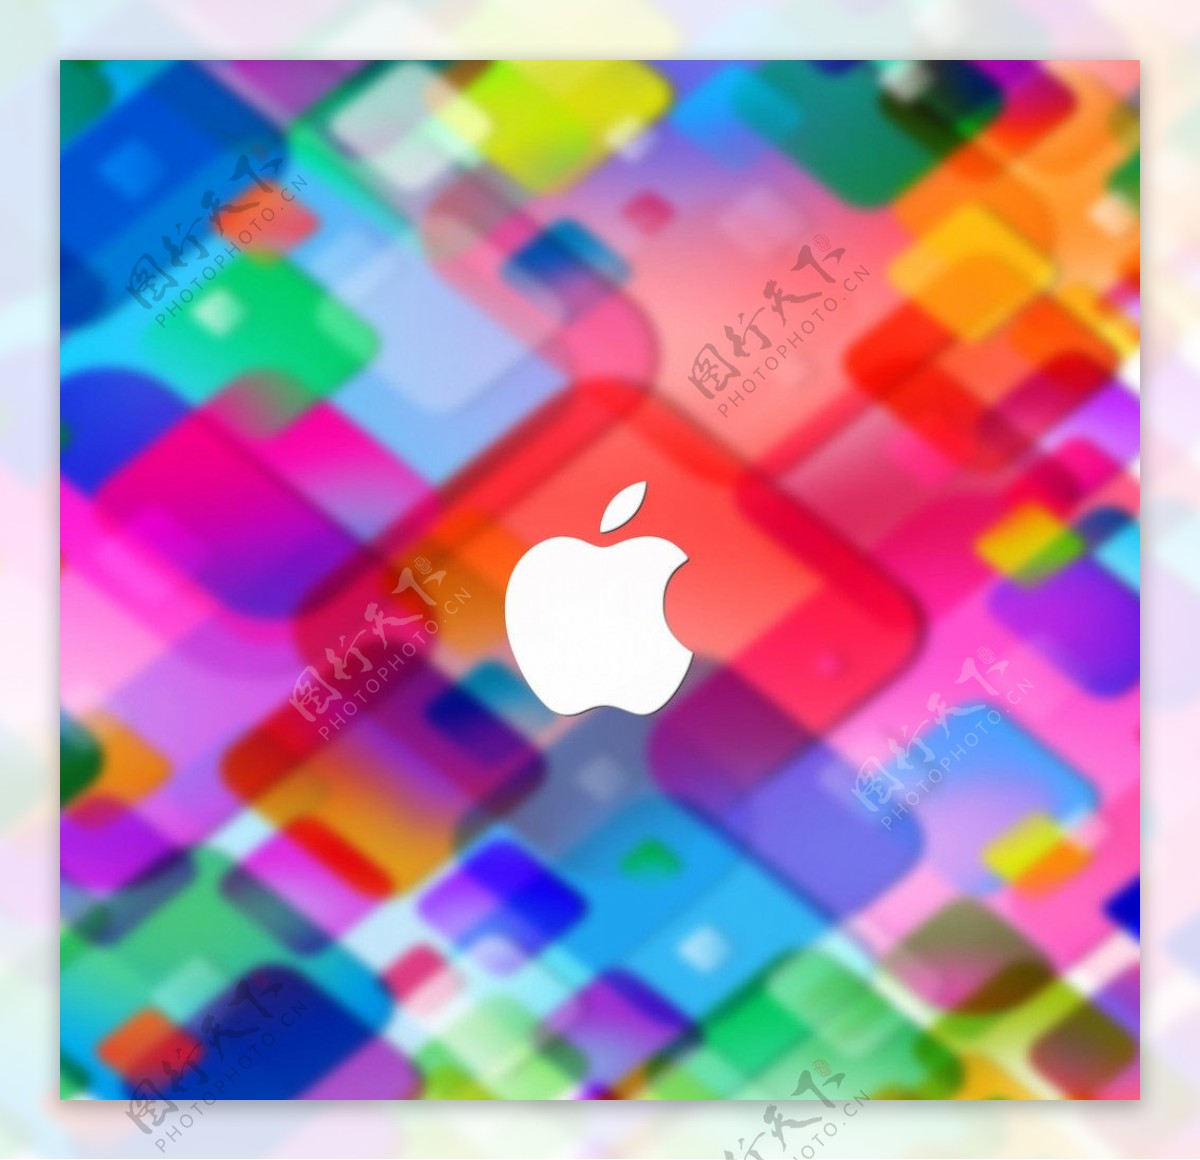 apple logo vector cdr free download - Arline Banuelos